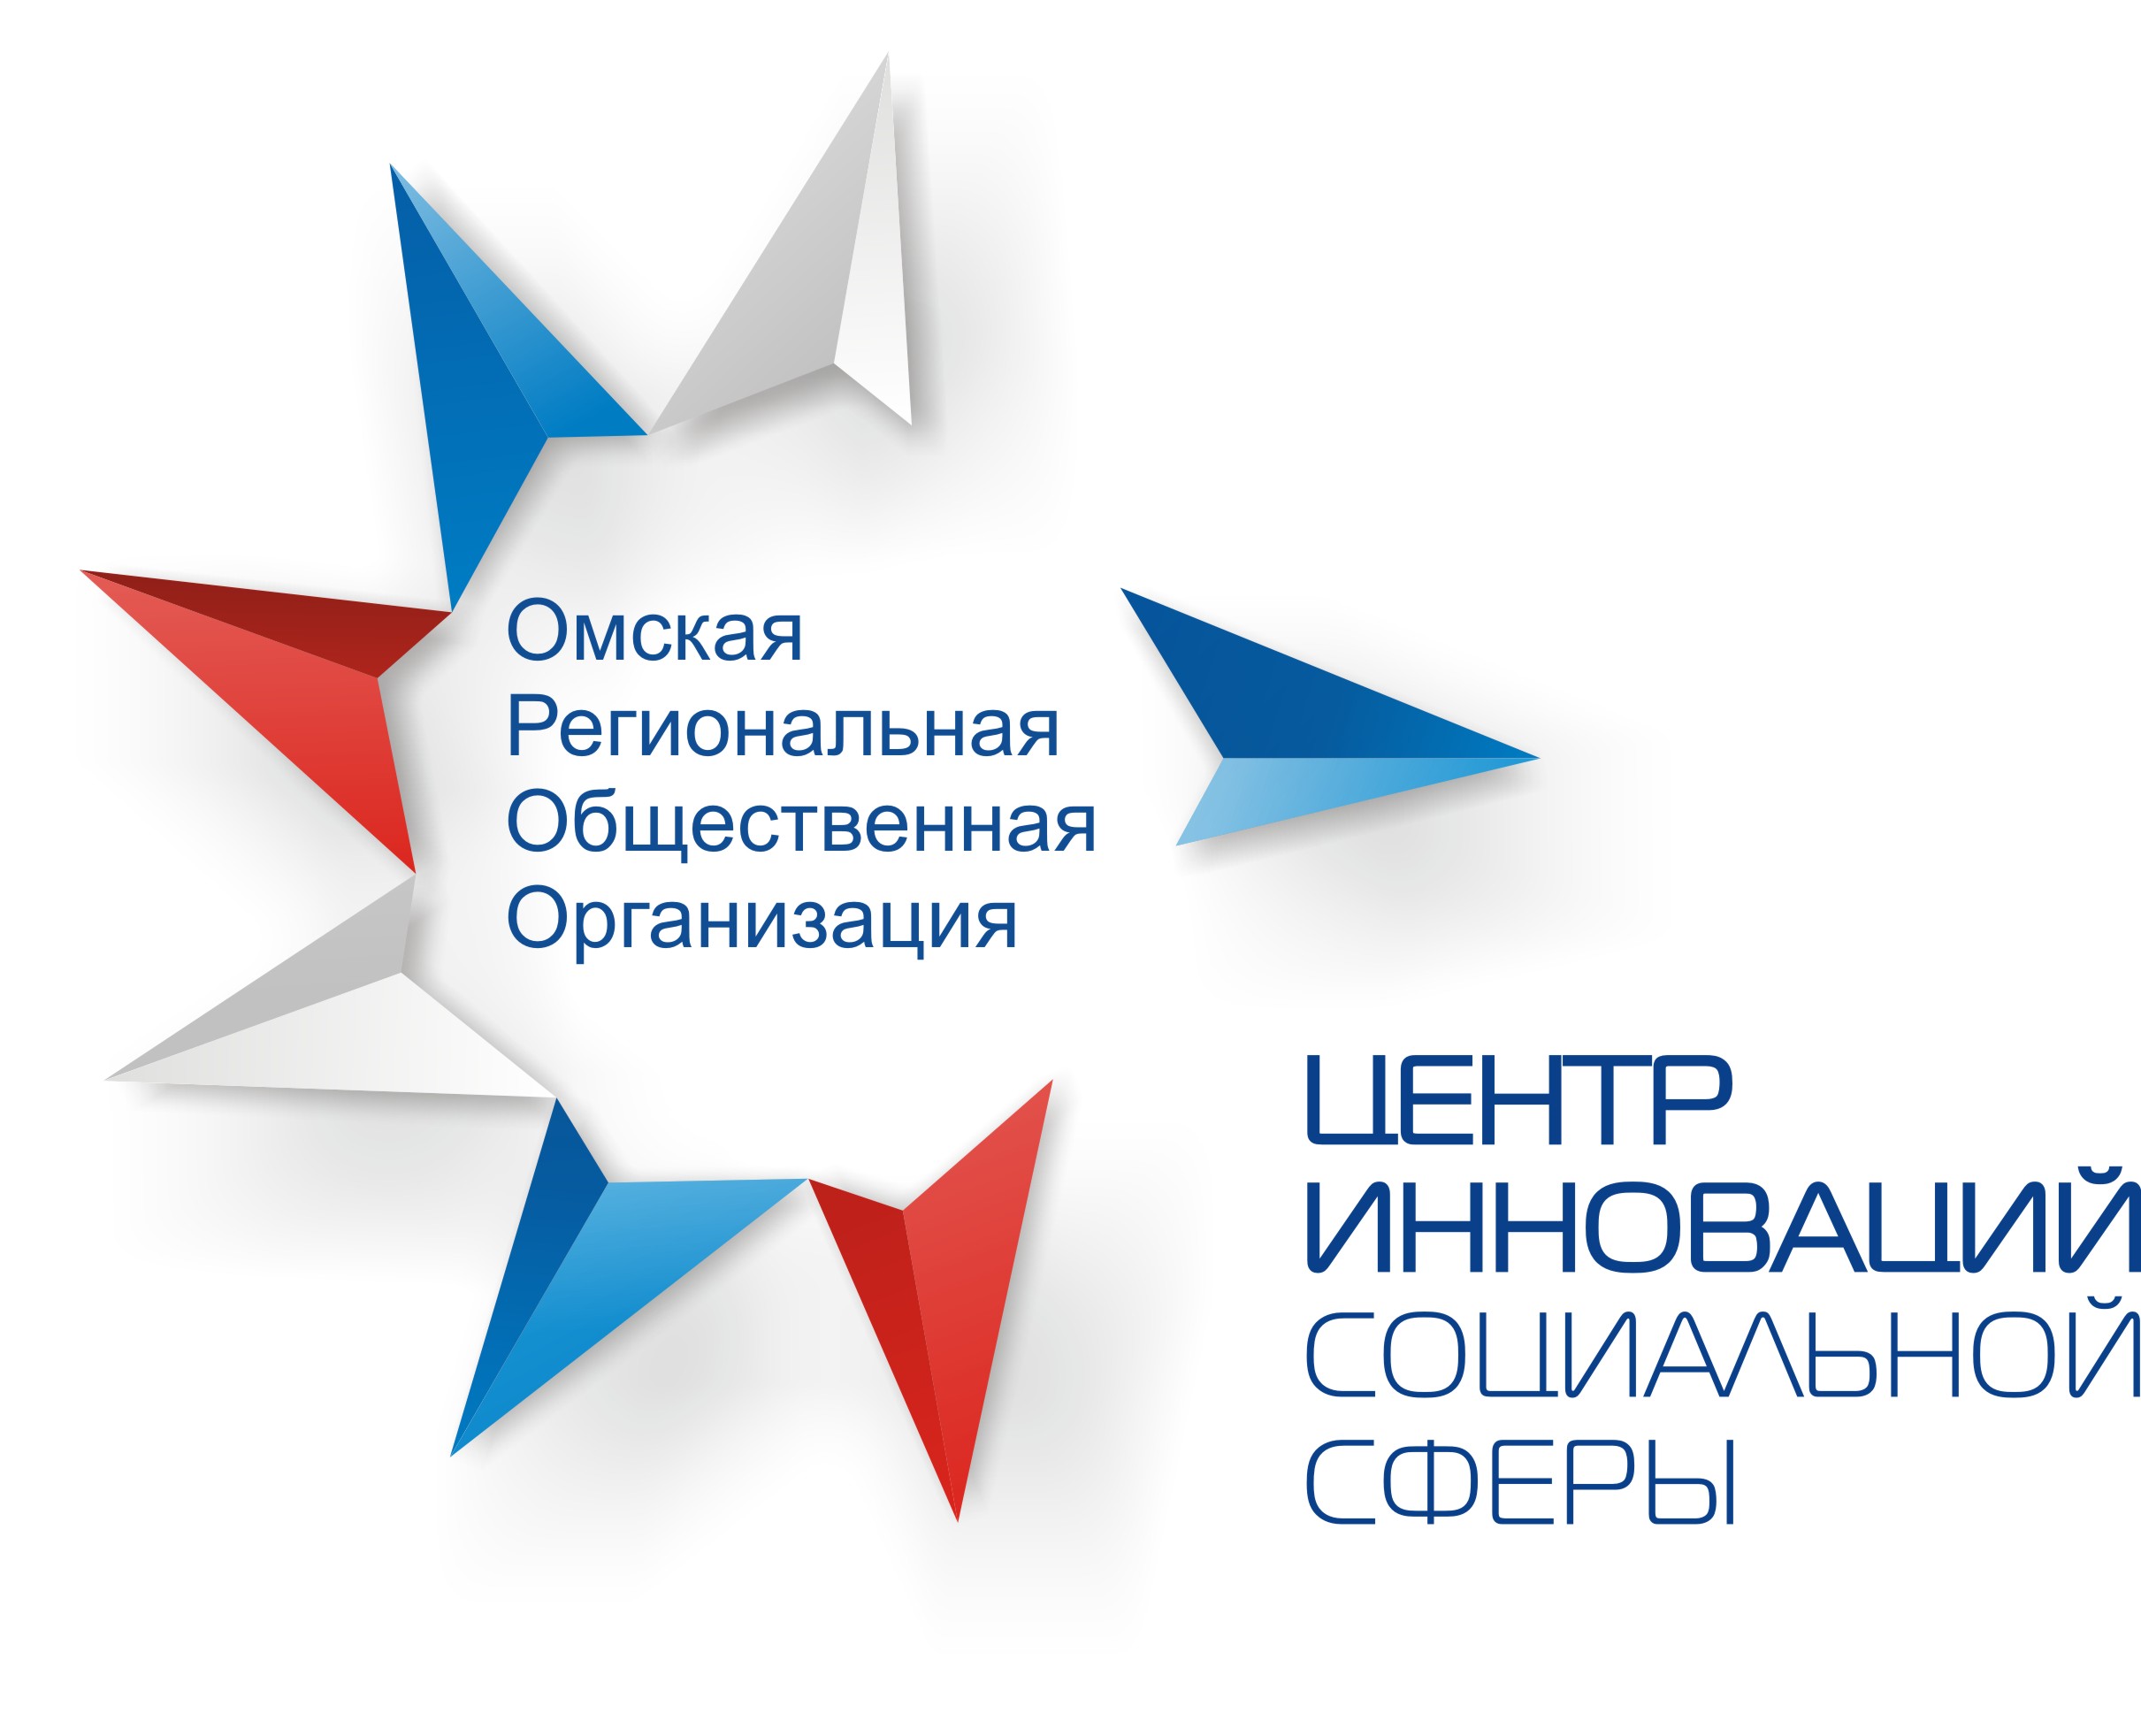 Омская Региональная общественная организация Центр инноваций социальной сферы объявляет 55 набор в Школу Социального предпринимательства